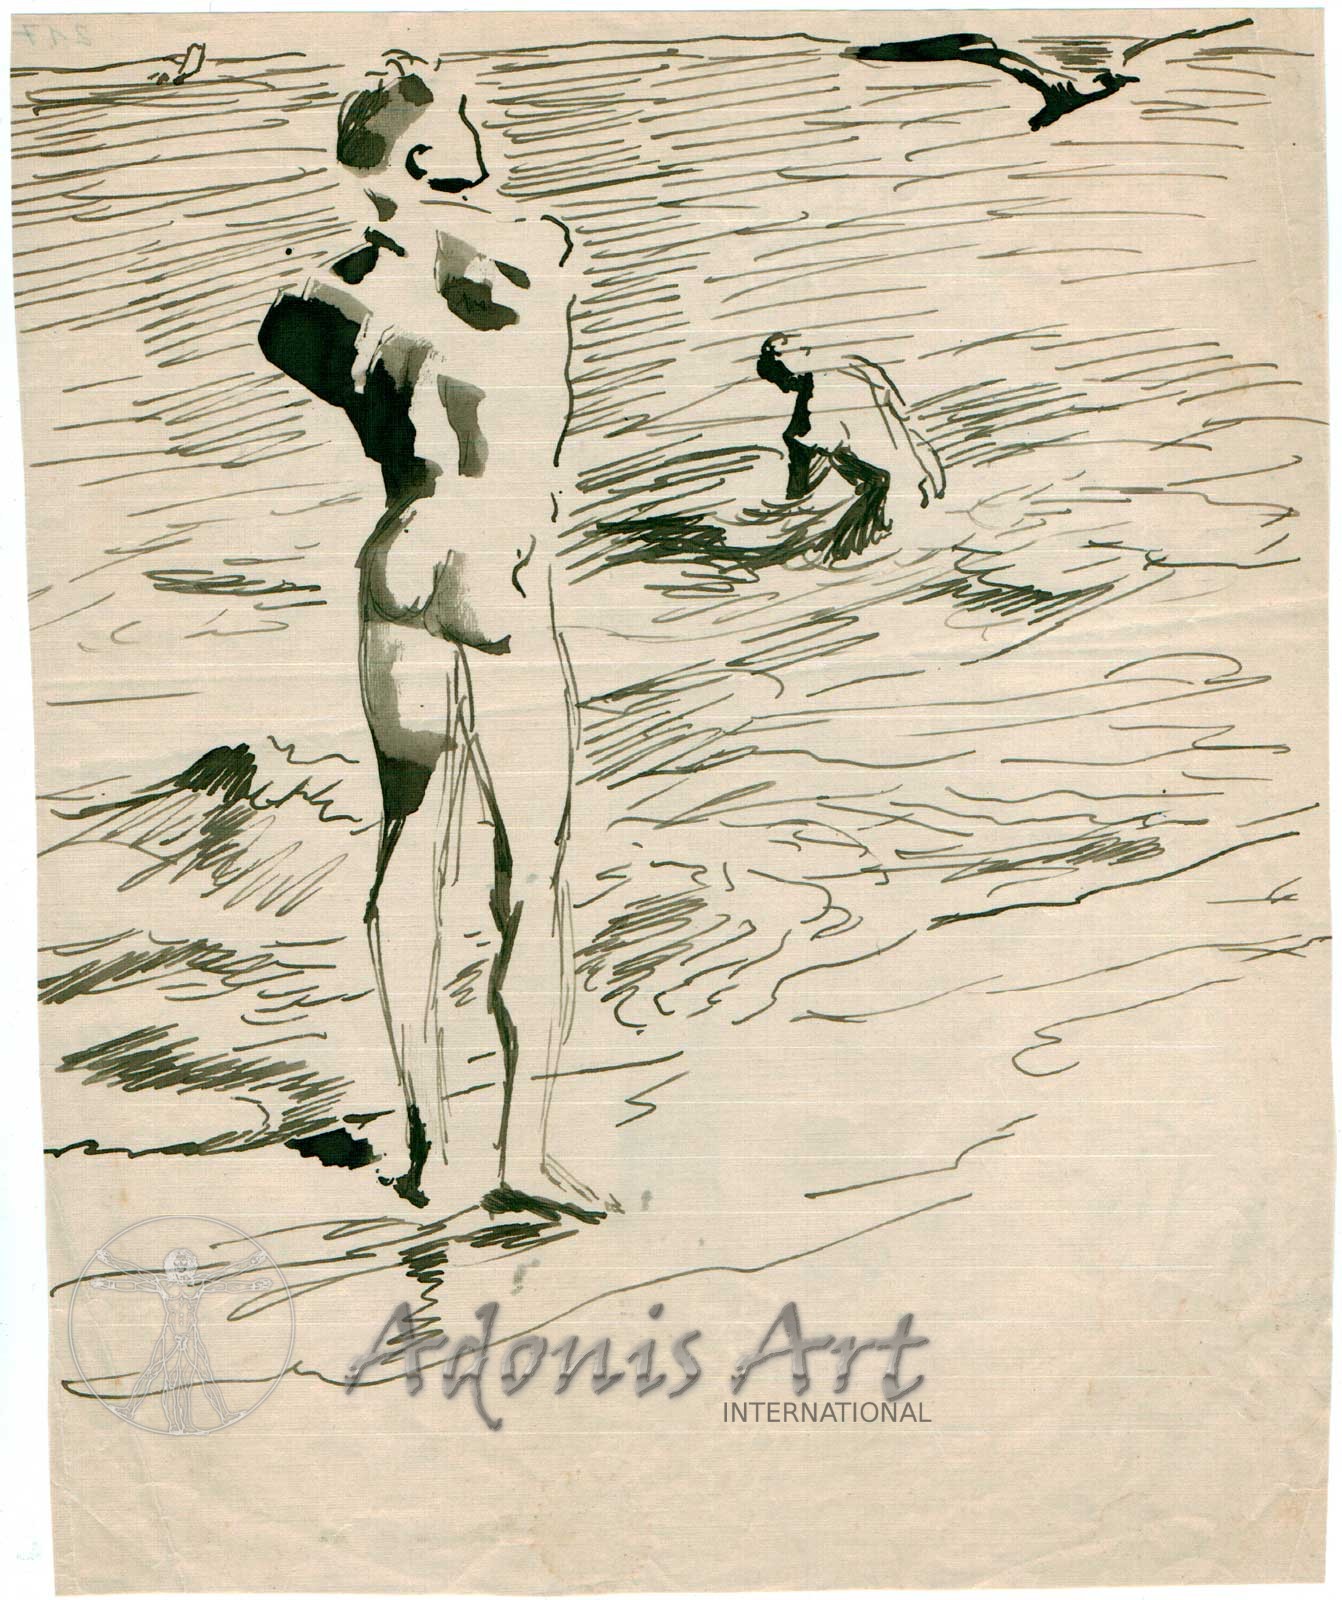 'Bathing at the Beach' by Wilhelm Heinrich Focke